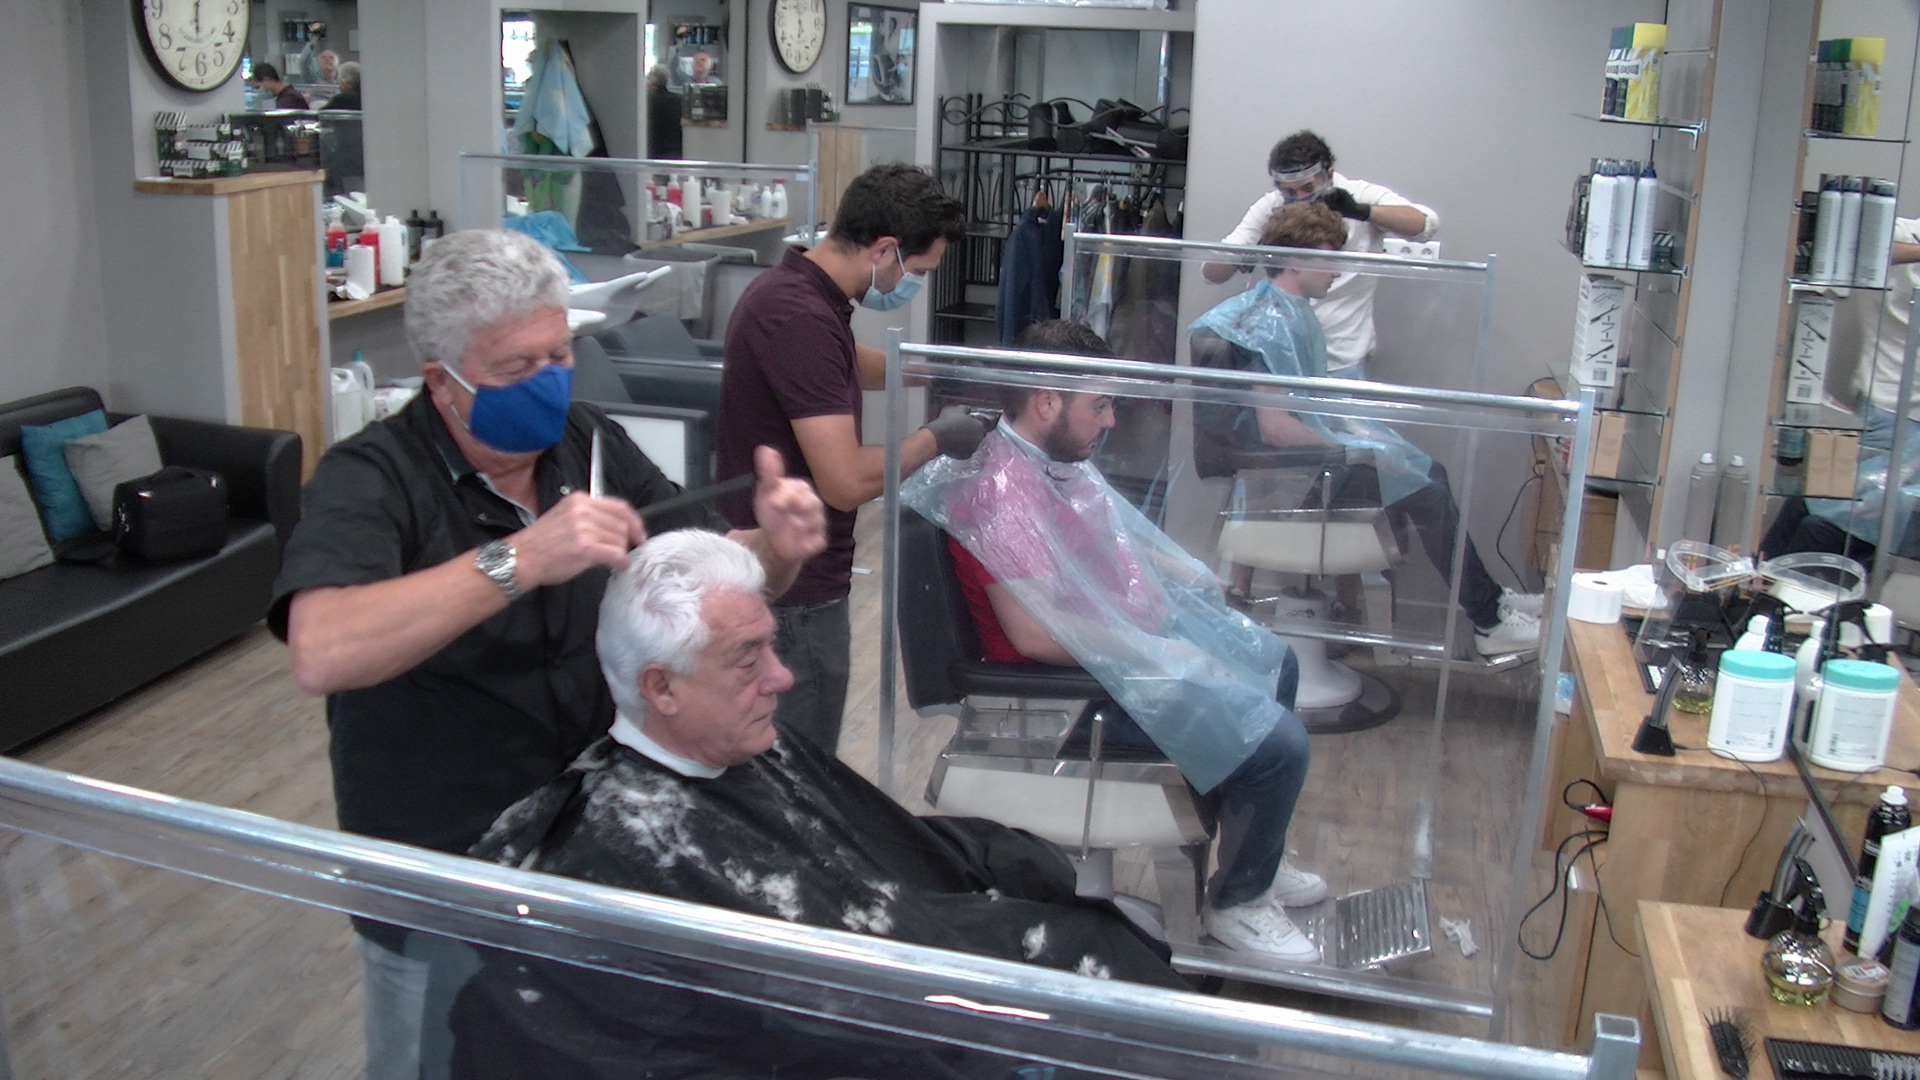 VIDEO - Déconfinement : Réouverture des salons de coiffure 